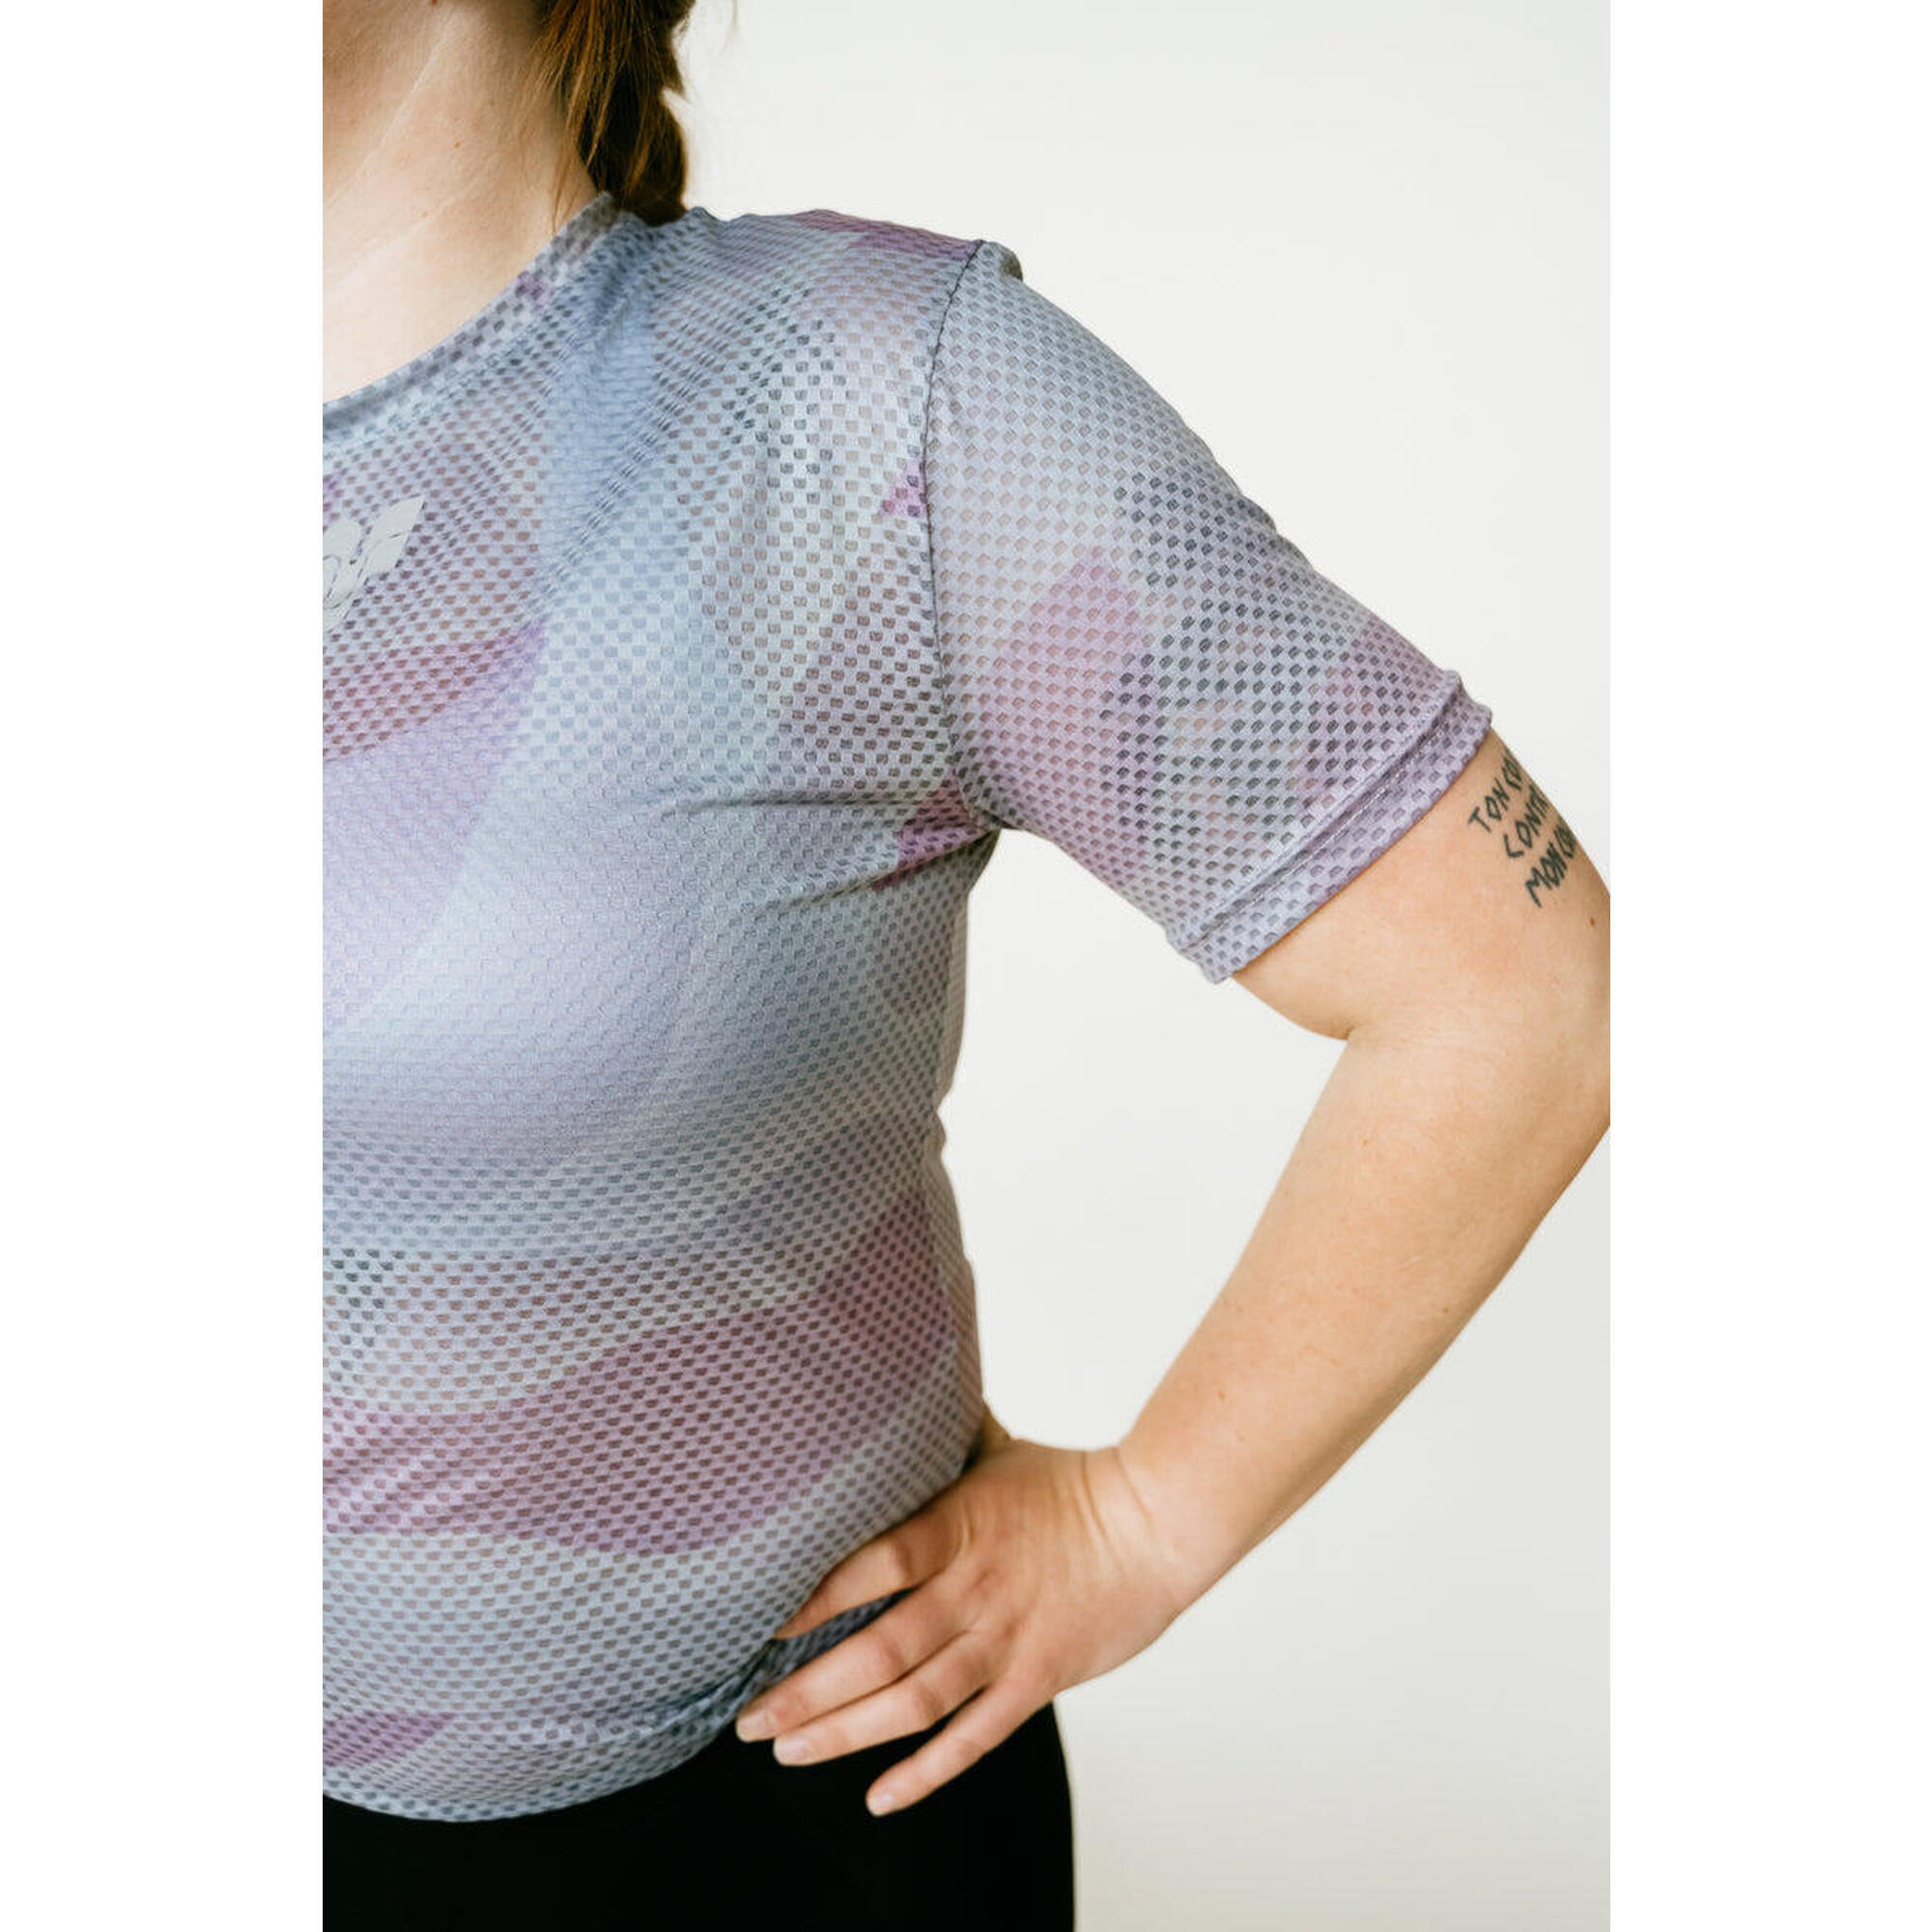 Ultralicht Mesh T-Shirt Voor Vrouwen